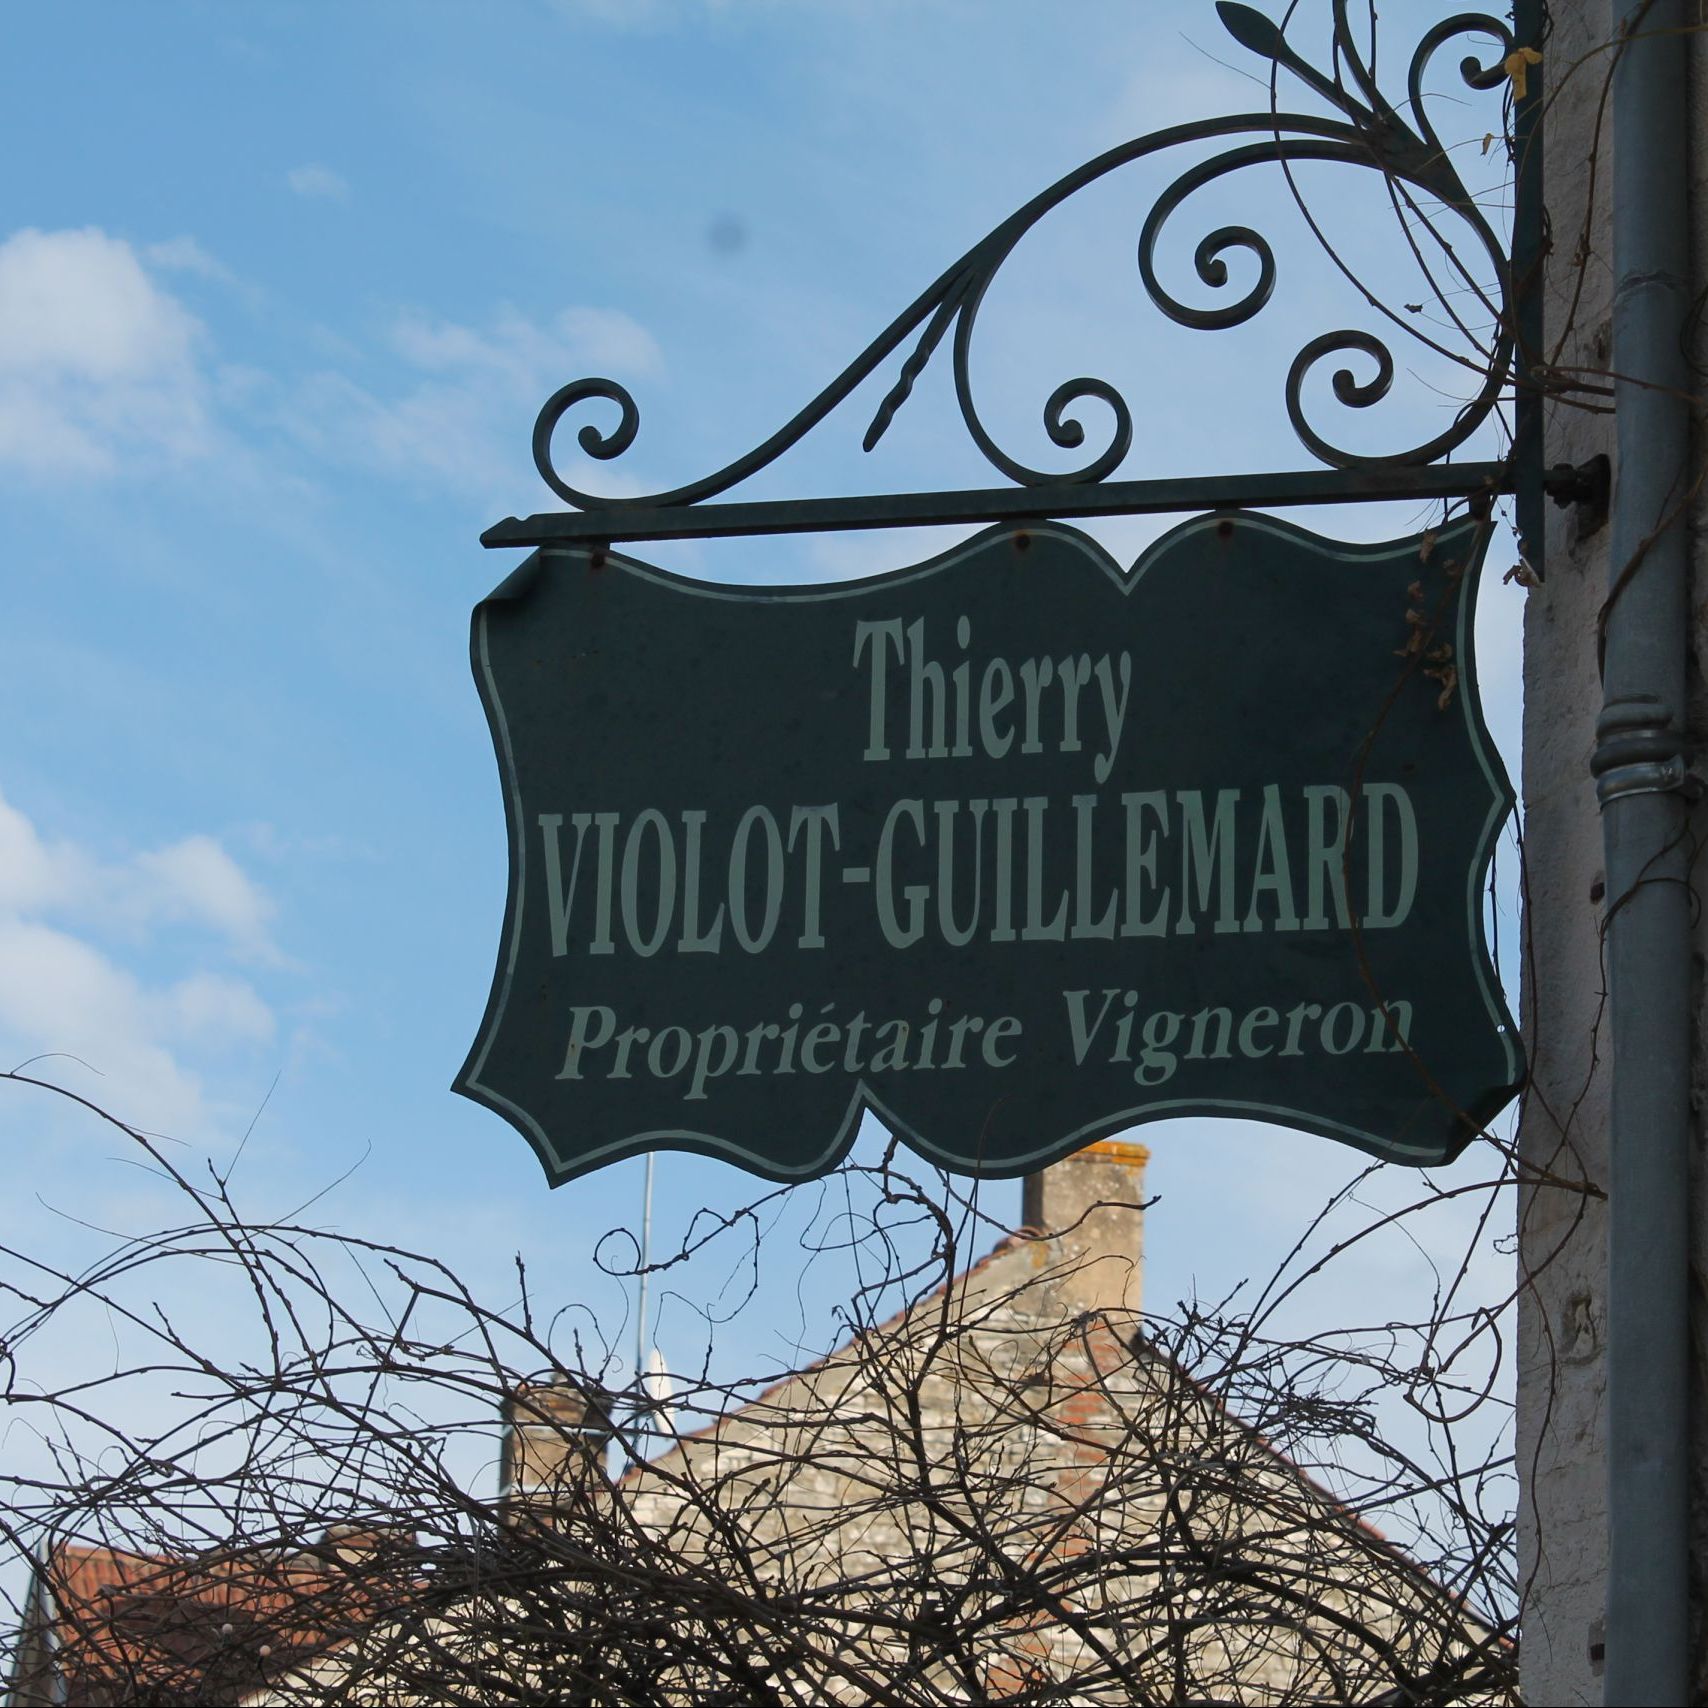 Violot-Guillemard